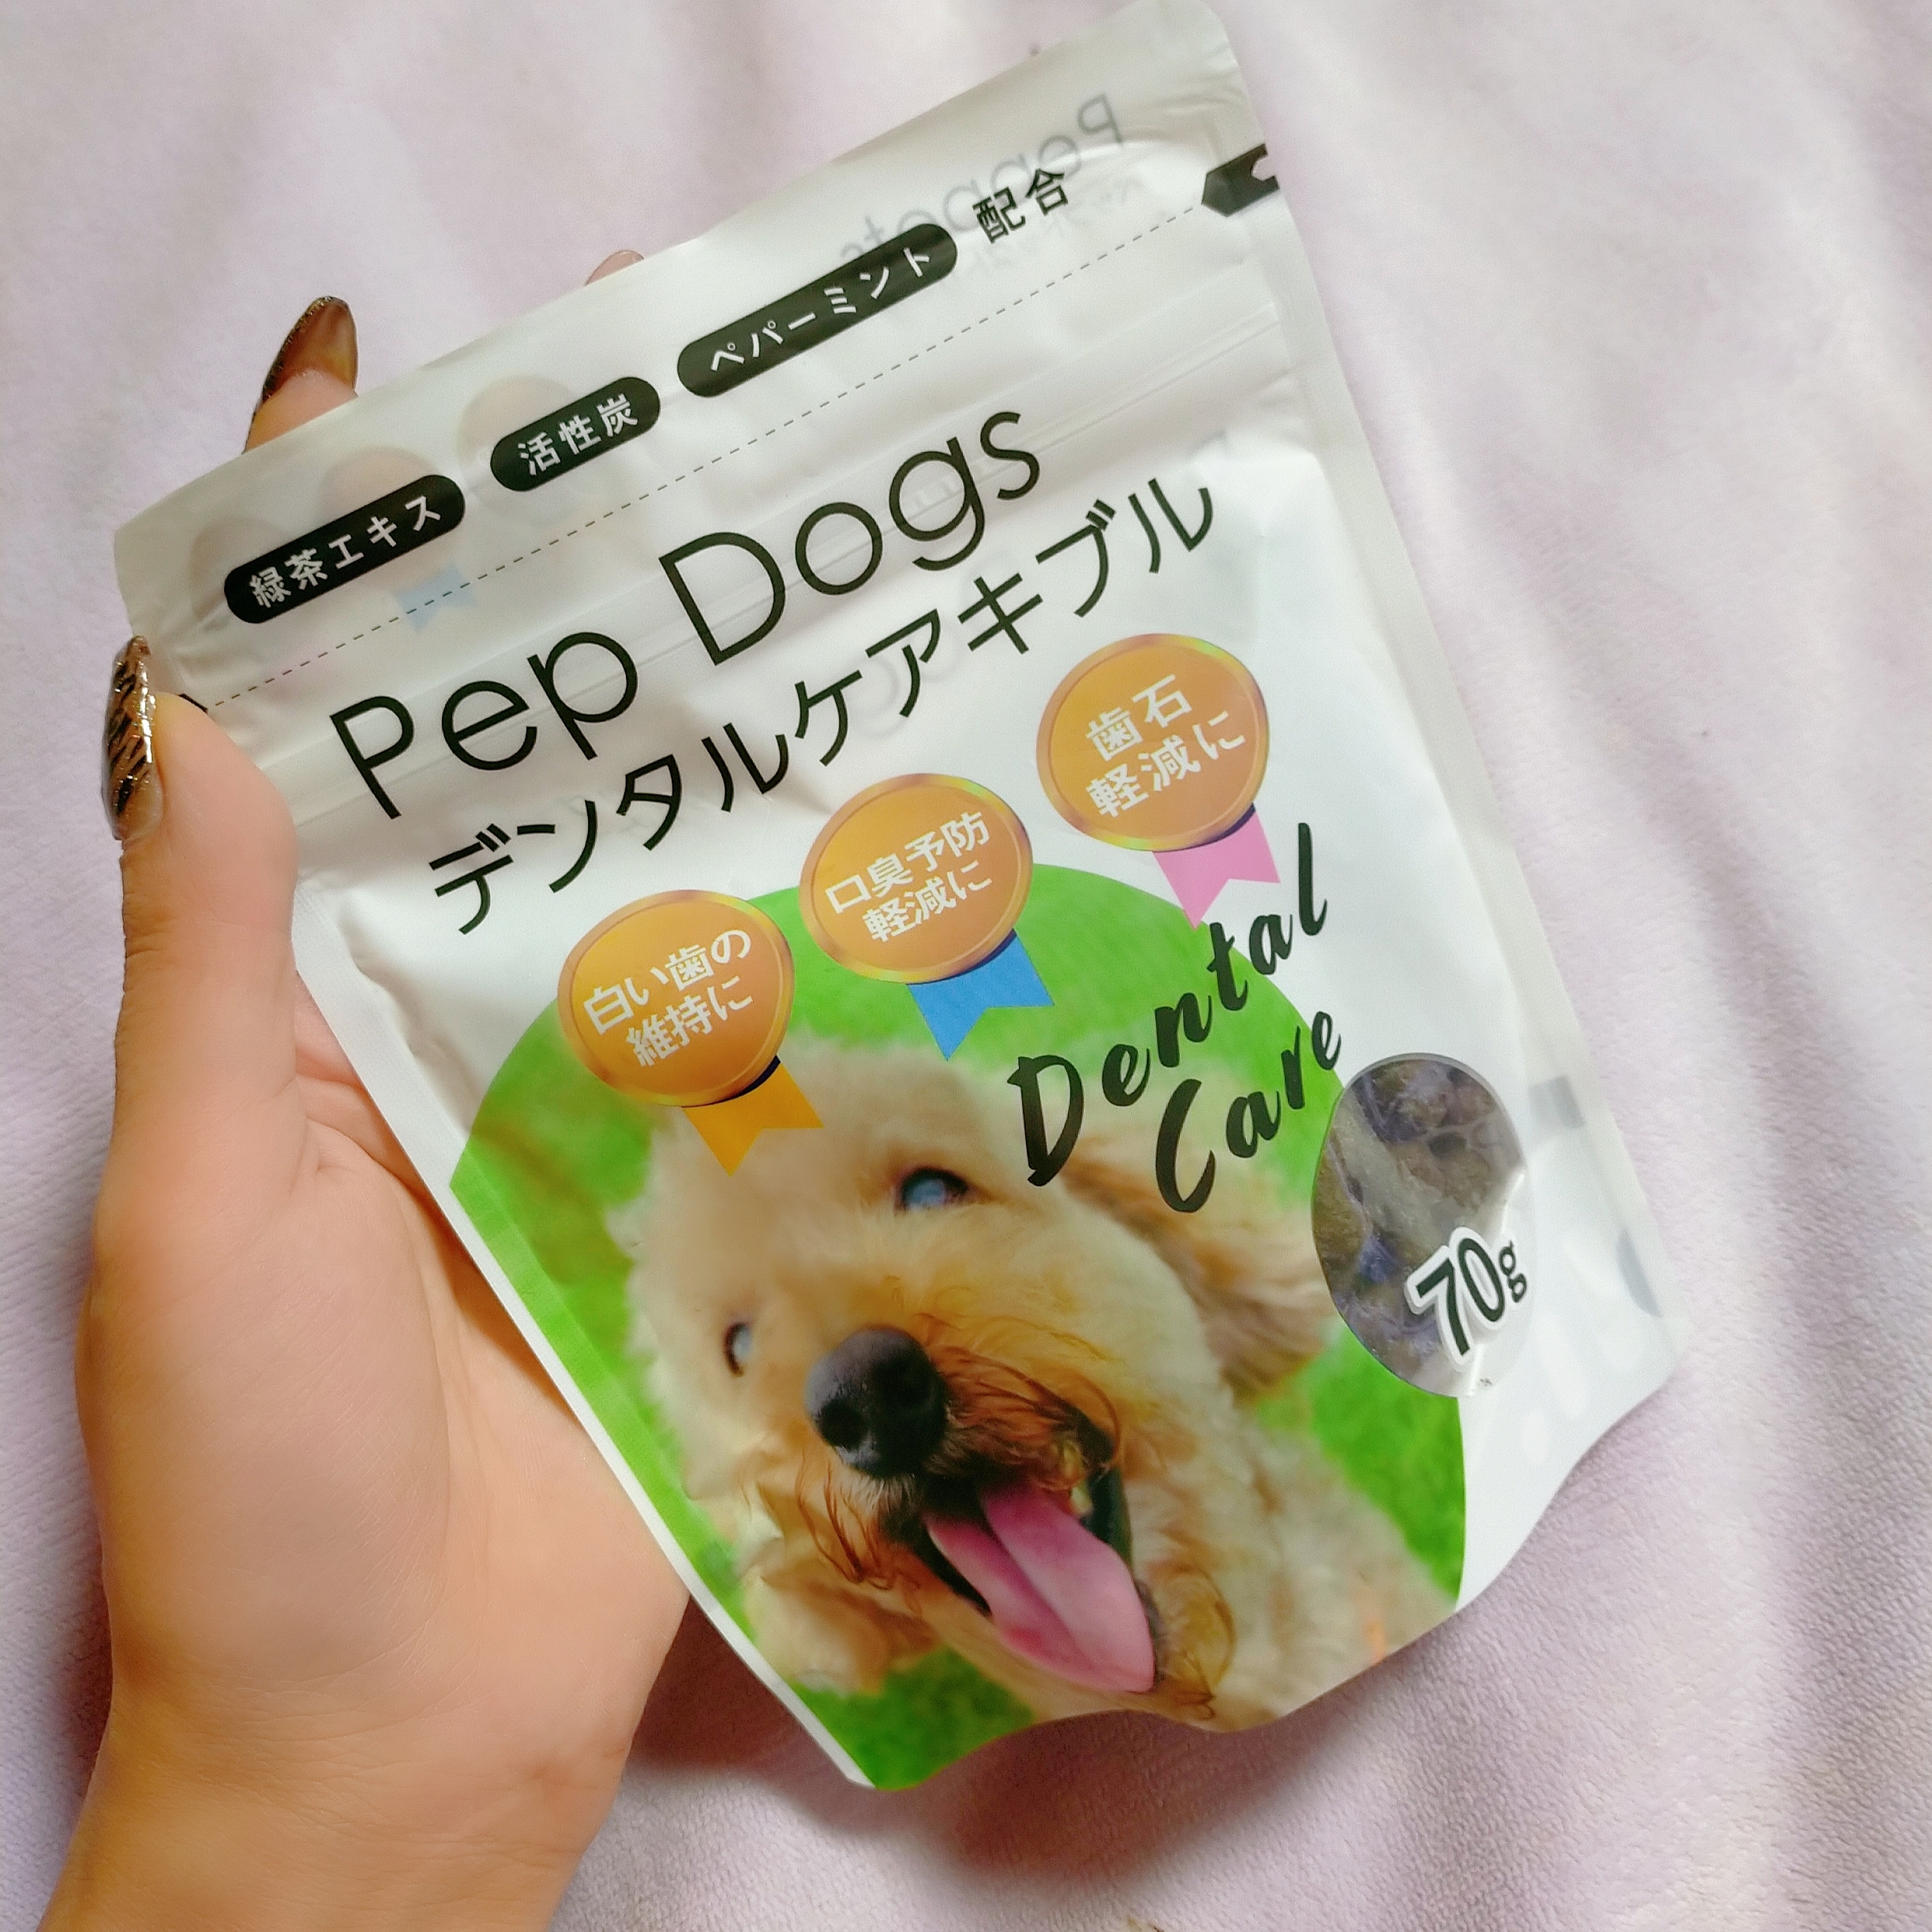 Pep Dogs(ペップドッグス) デンタルケアキブルの良い点・メリットに関するみこさんの口コミ画像3